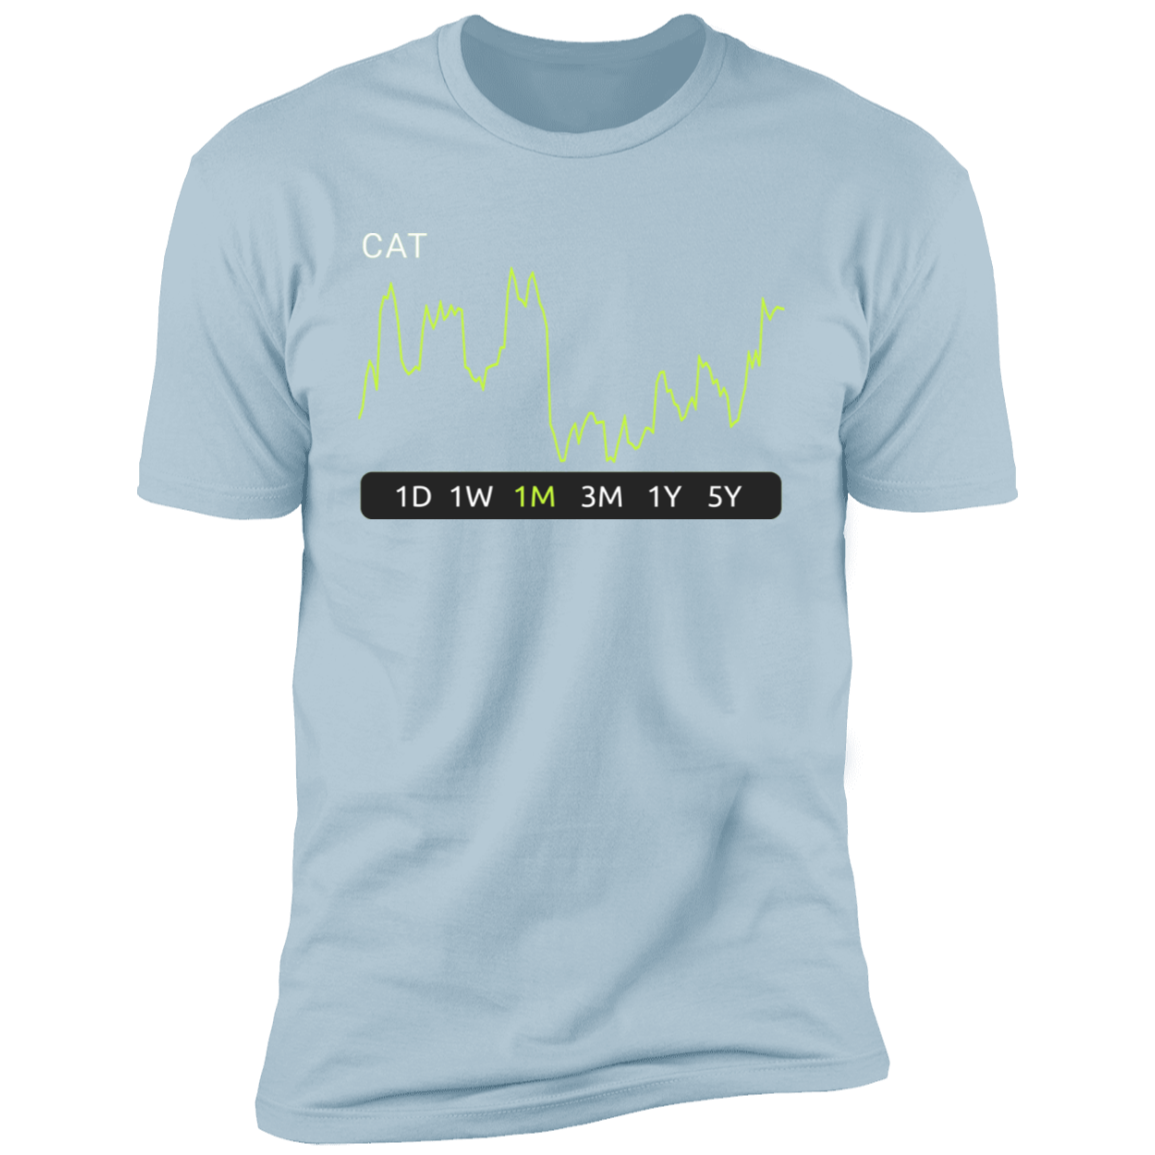 CAT Stock 1m Premium T-Shirt